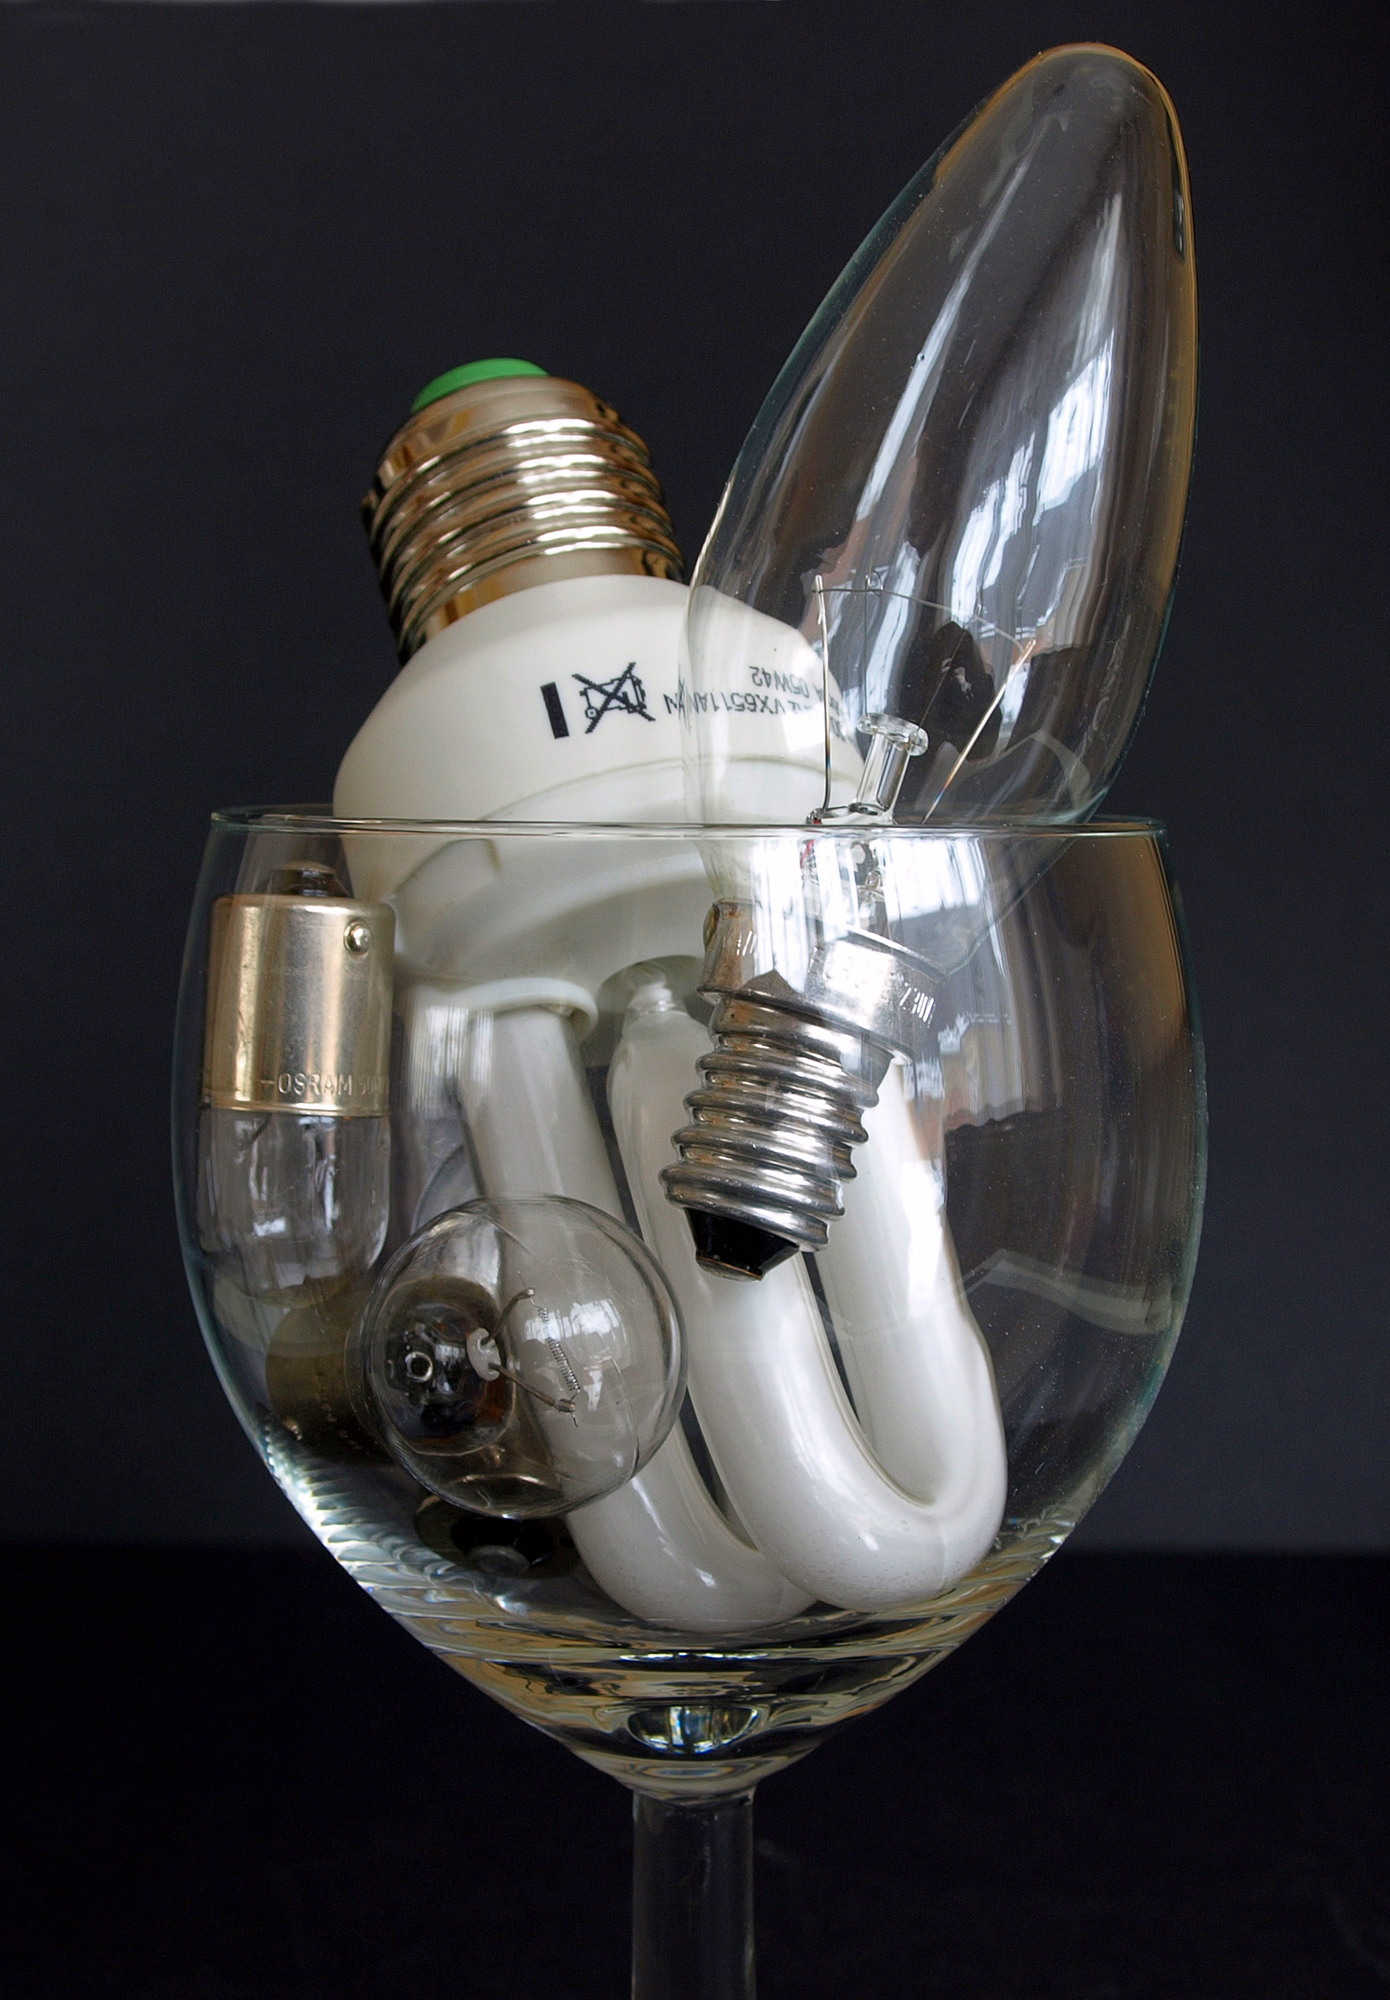 Energiesparlampe & Co.; Foto: Viktor Mildenberger / pixelio.de